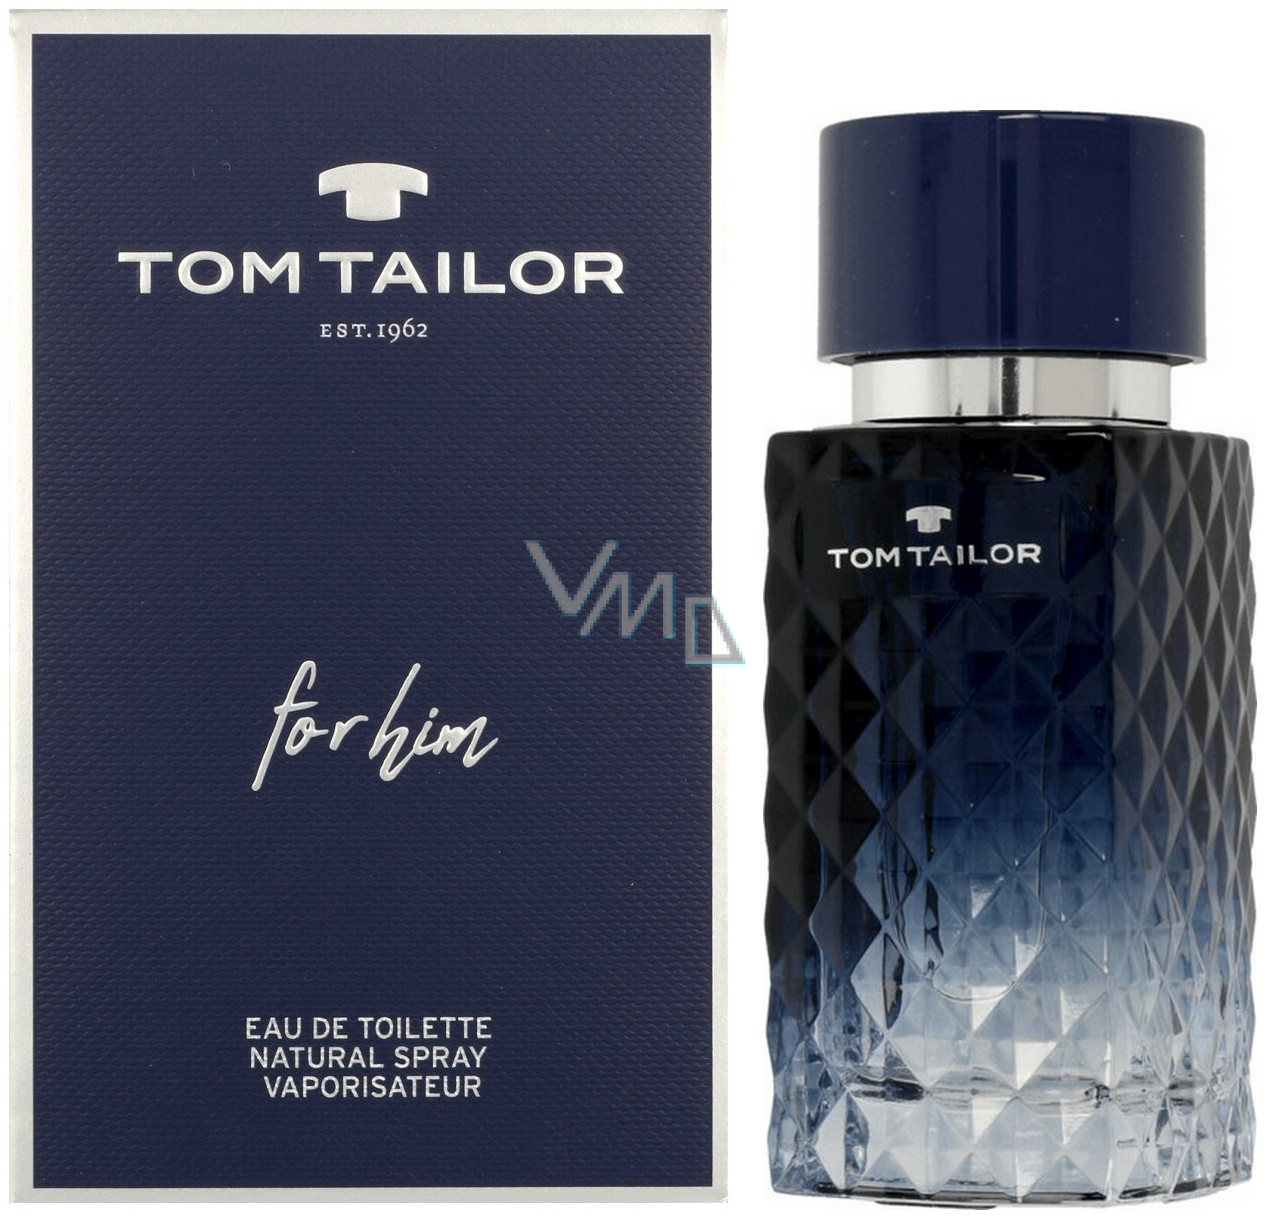 VMD Tom Tailor drogerie parfumerie - Toilette Him - Eau for de ml 30